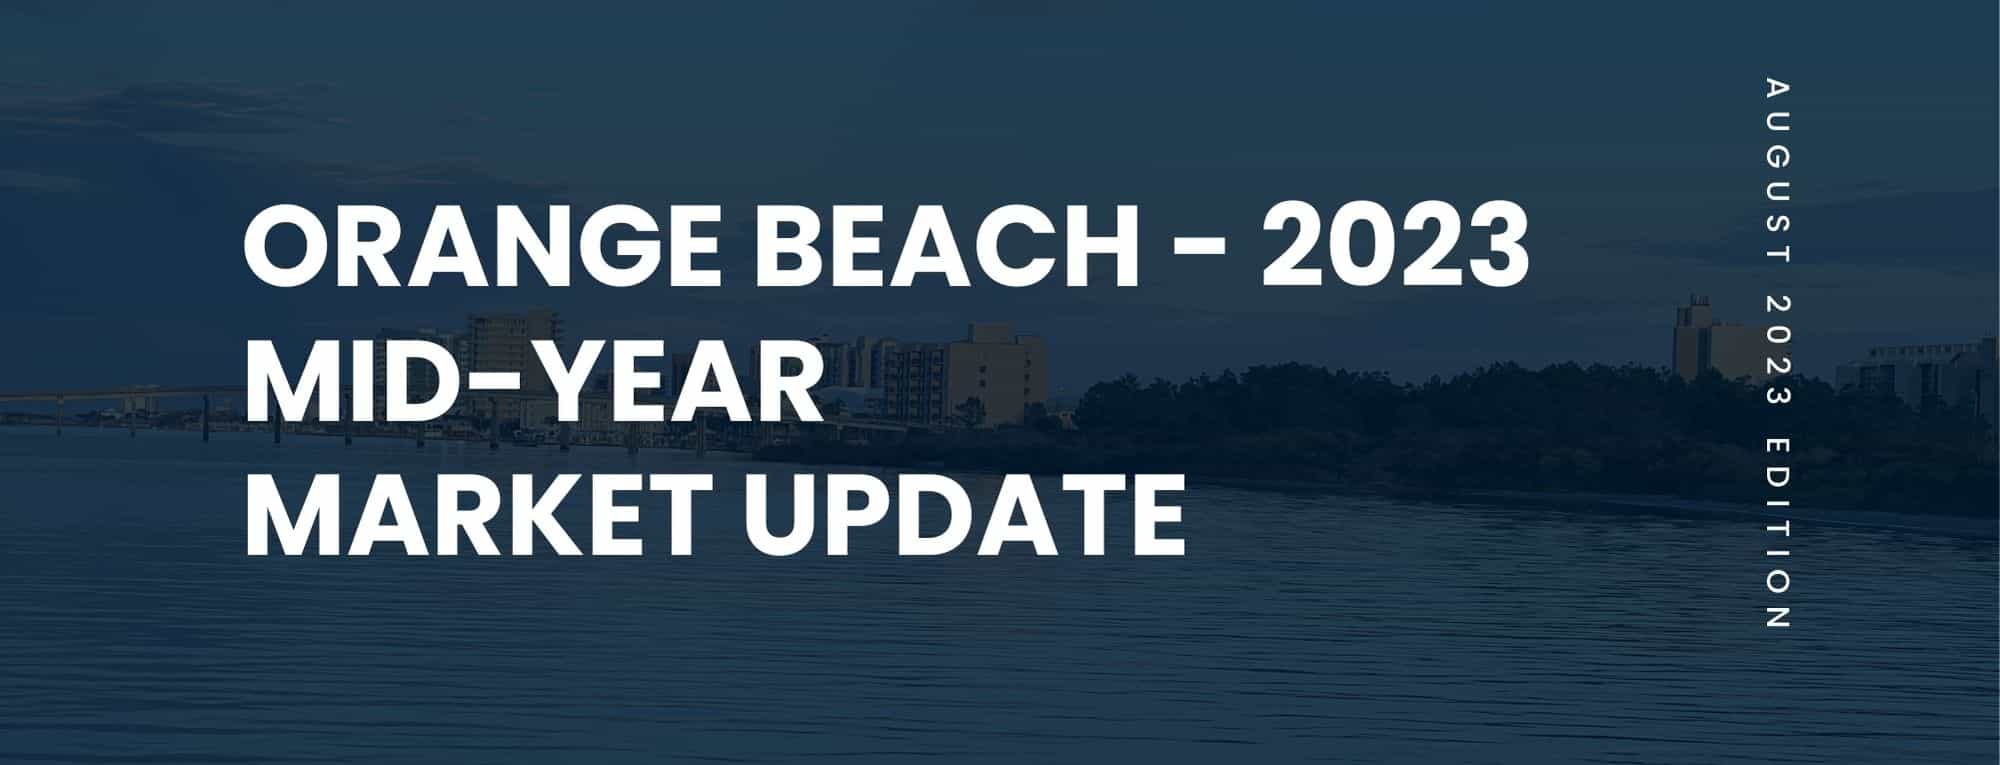 Orange Beach Condo Mid-Year 2023 Market Updated